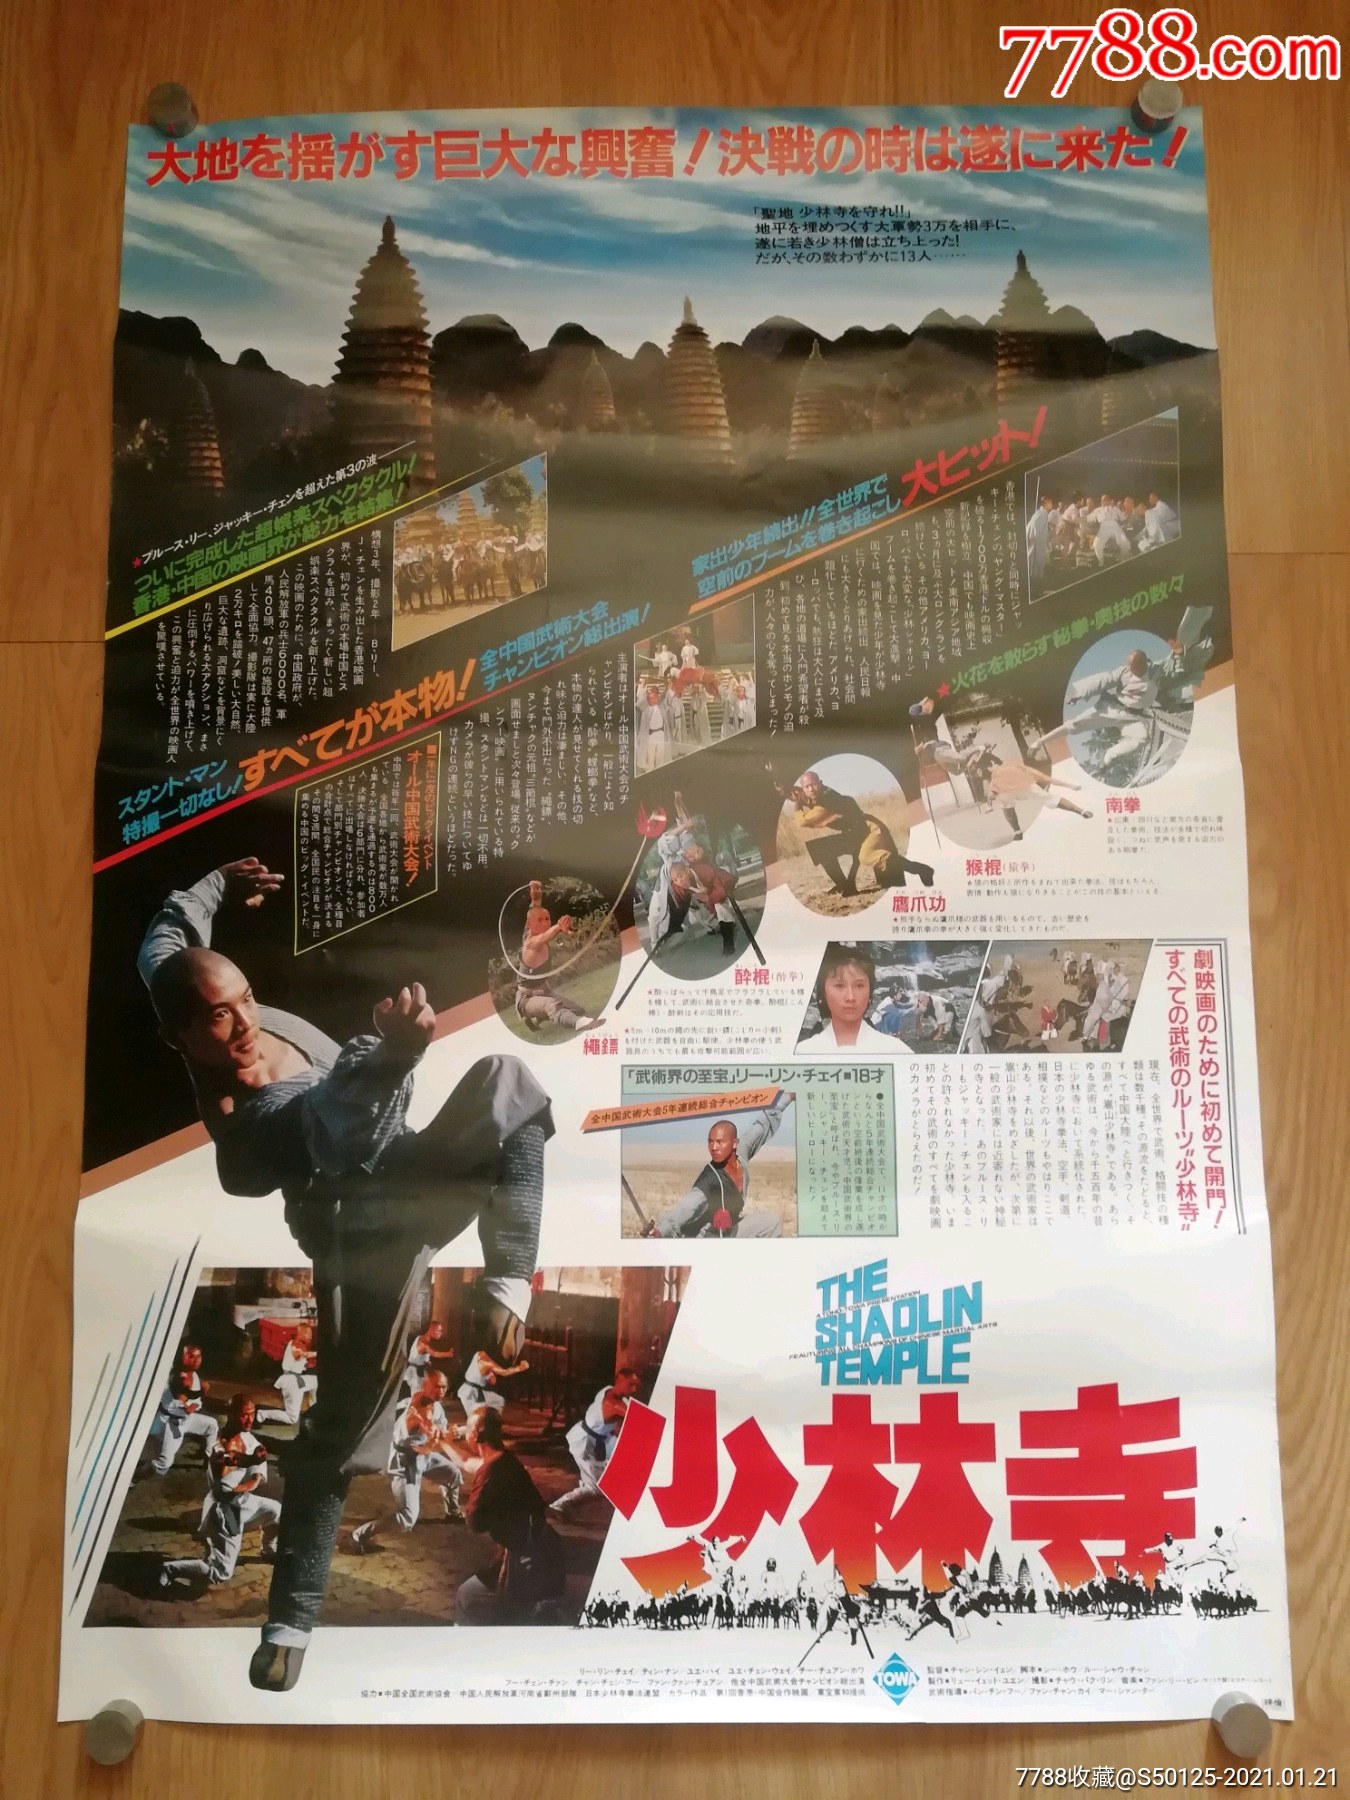 经典电影少林寺李连杰日本一开版原版电影海报